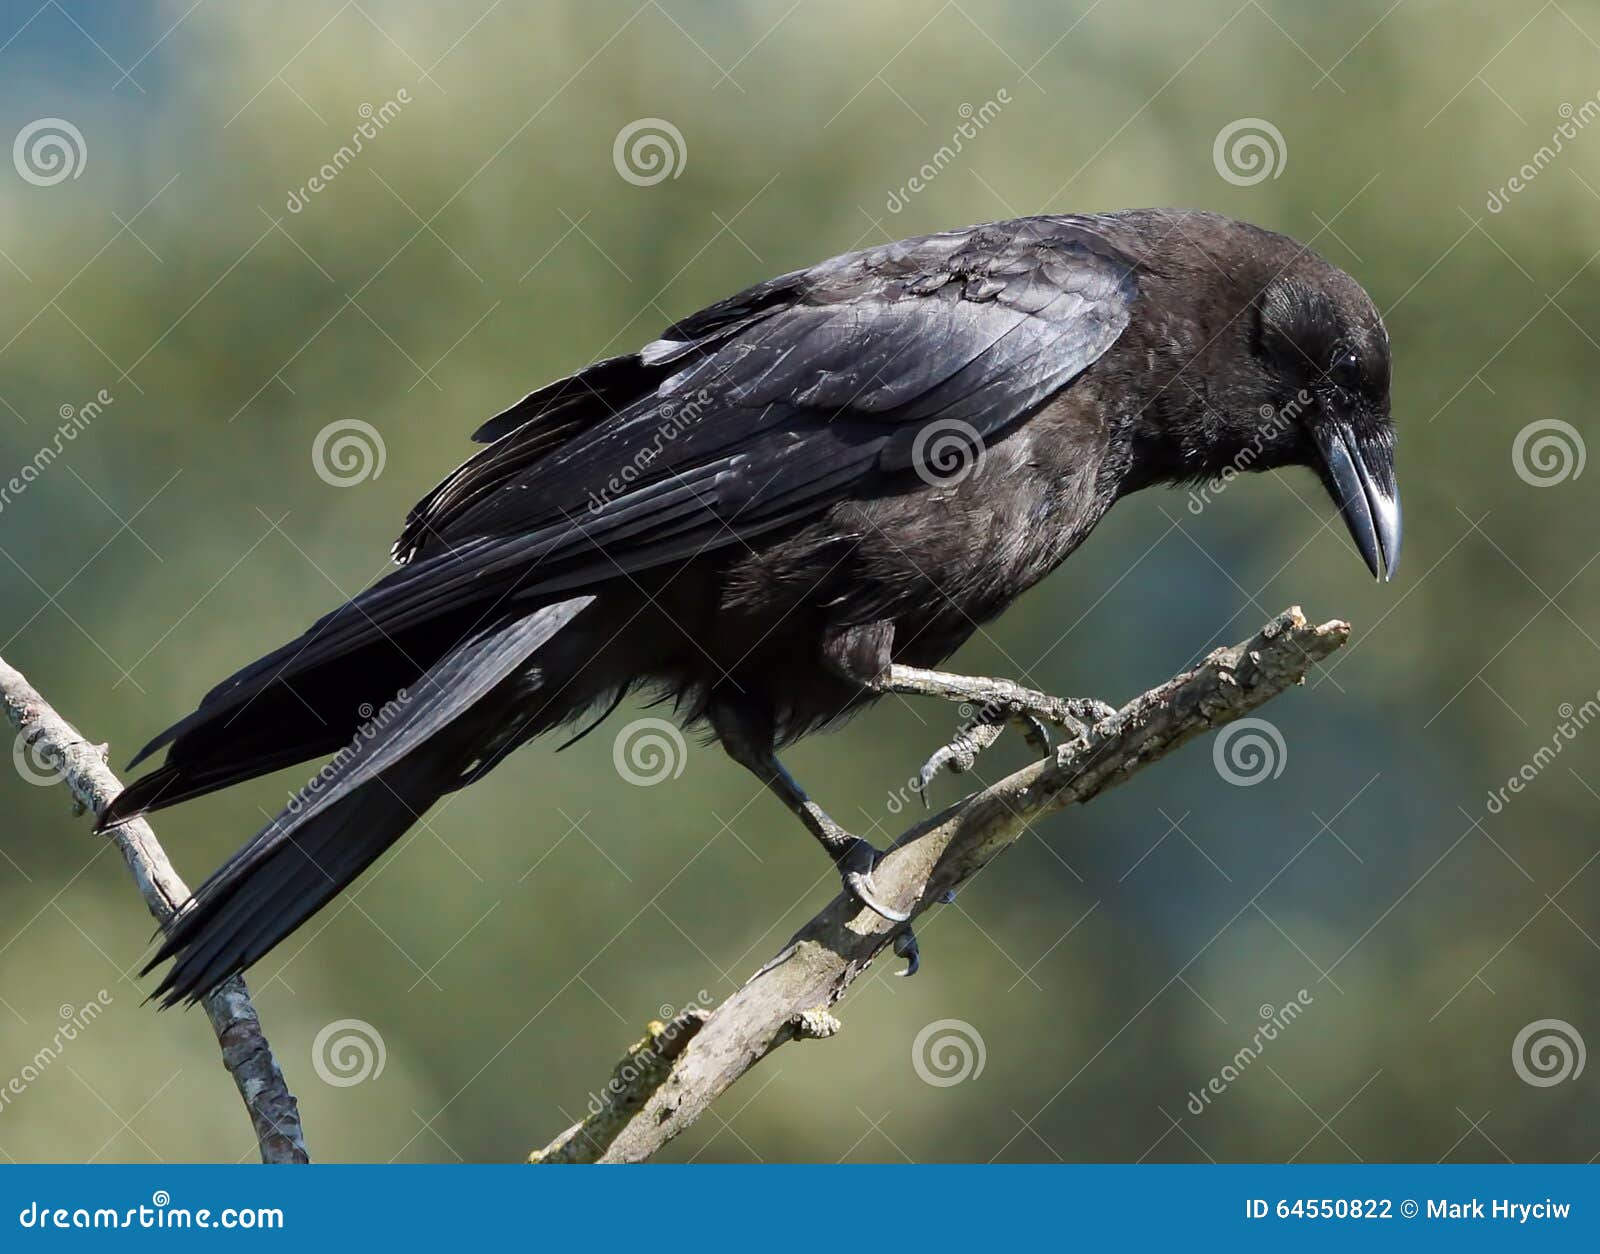 crow - corvus branchyrhynchos